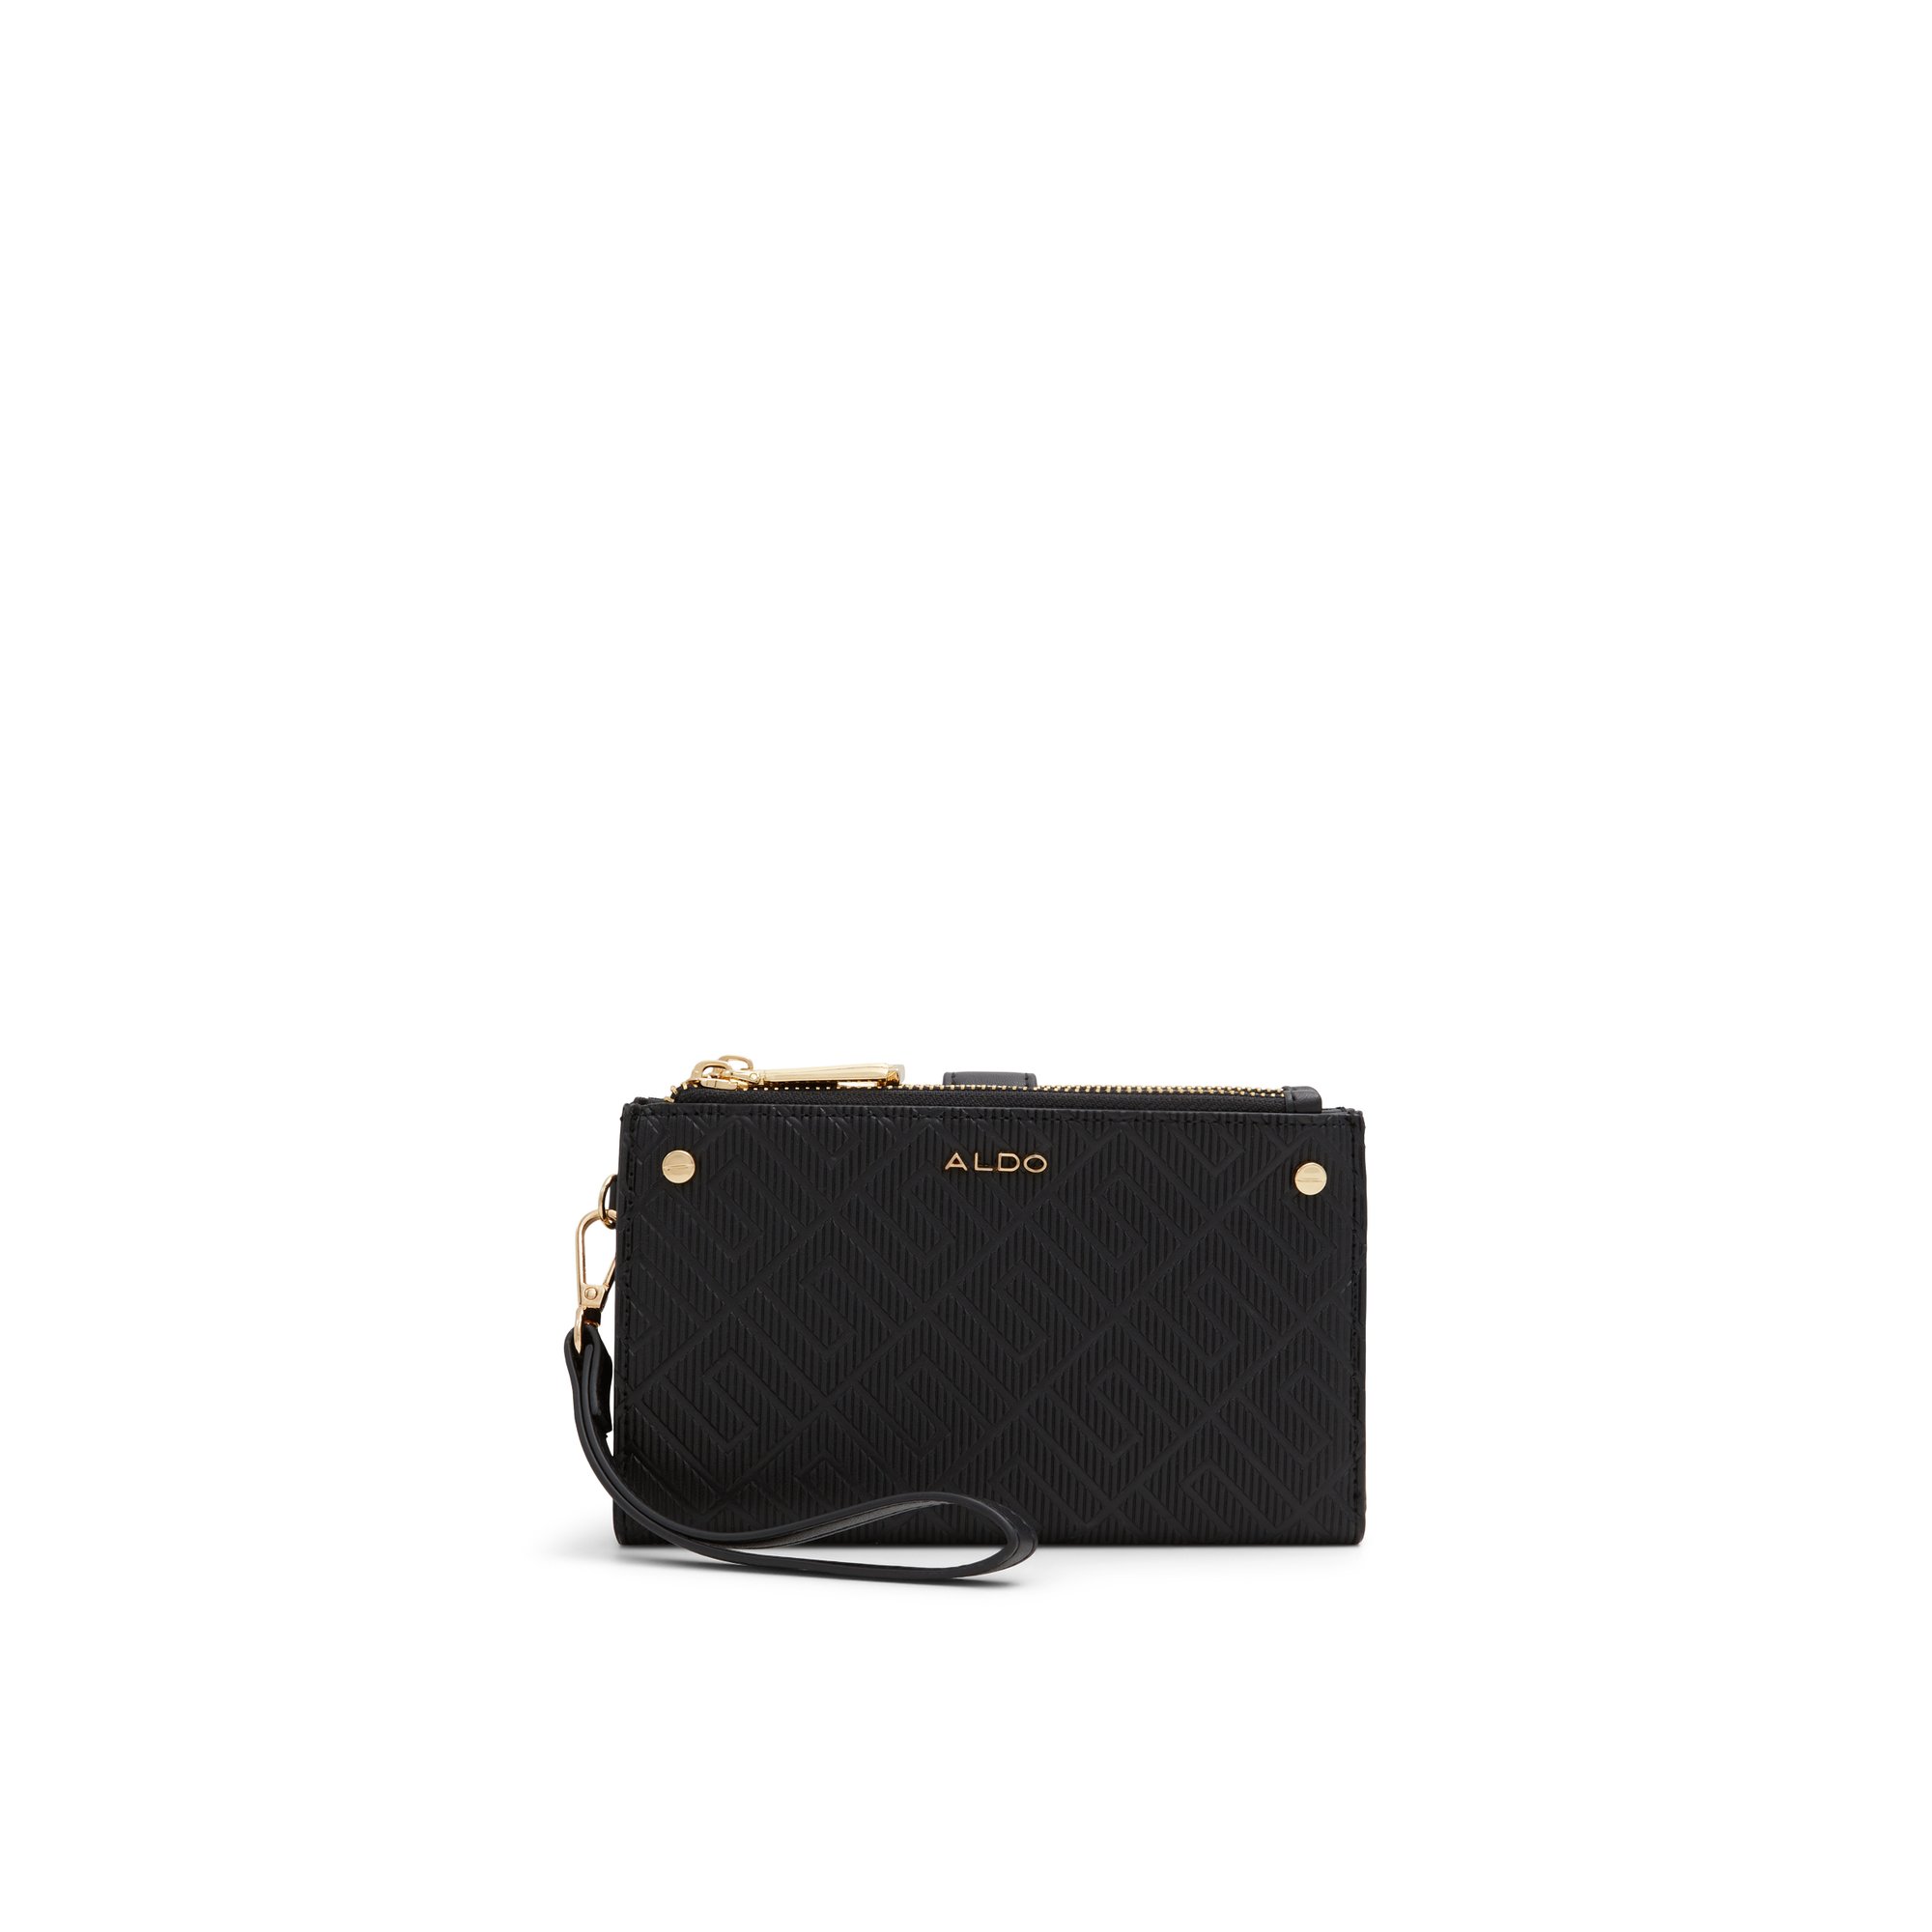 ALDO Illori - Women's Handbags Wallets - Black